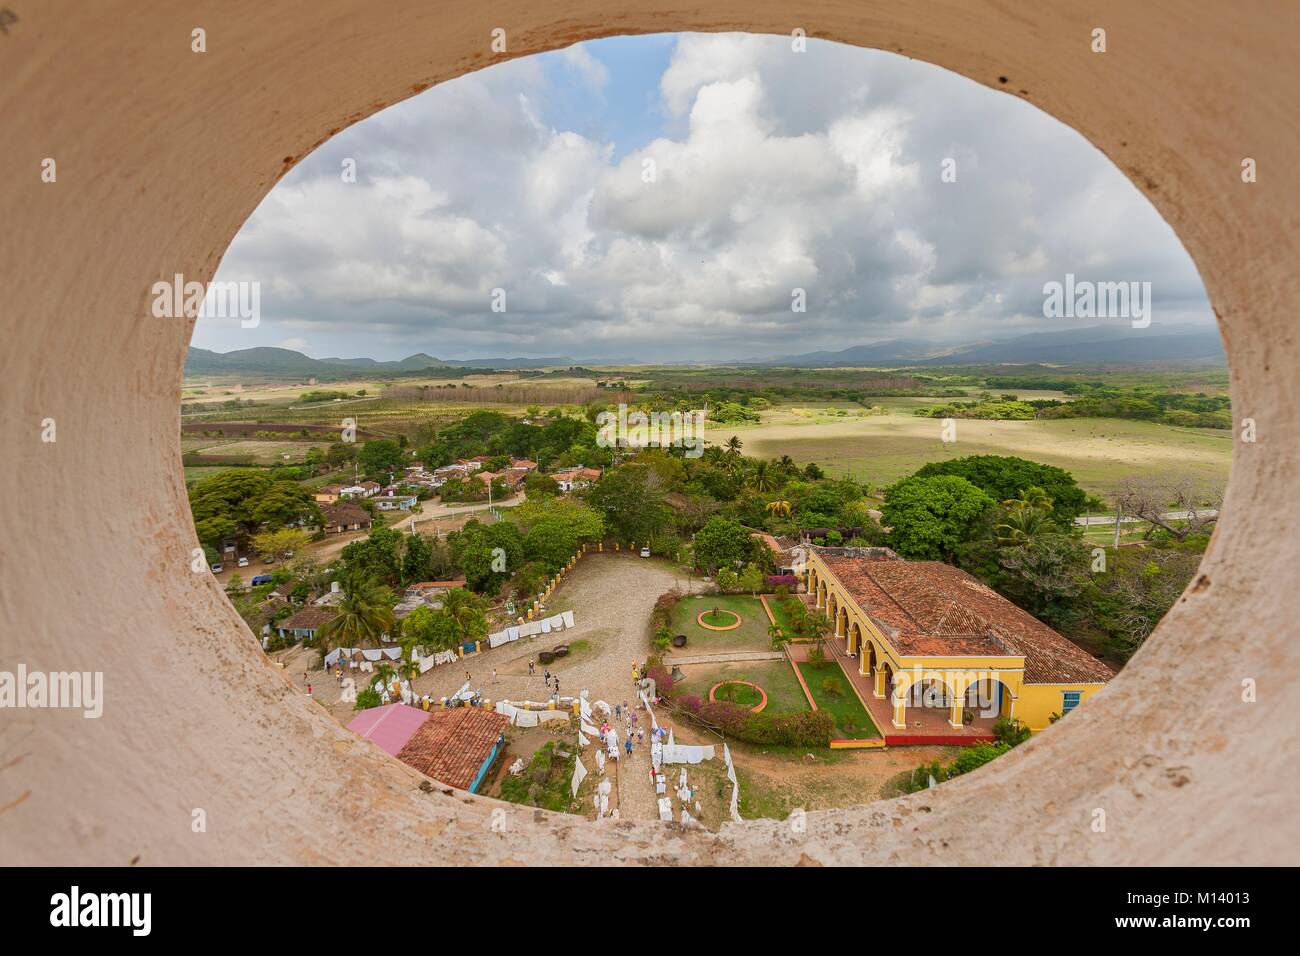 Kuba, Provinz Sancti Spiritus, Trinidad, einer Stadt, die zum Weltkulturerbe der UNESCO, Valle de los Ingenios, der Turm Manaca Iznaga Stockfoto